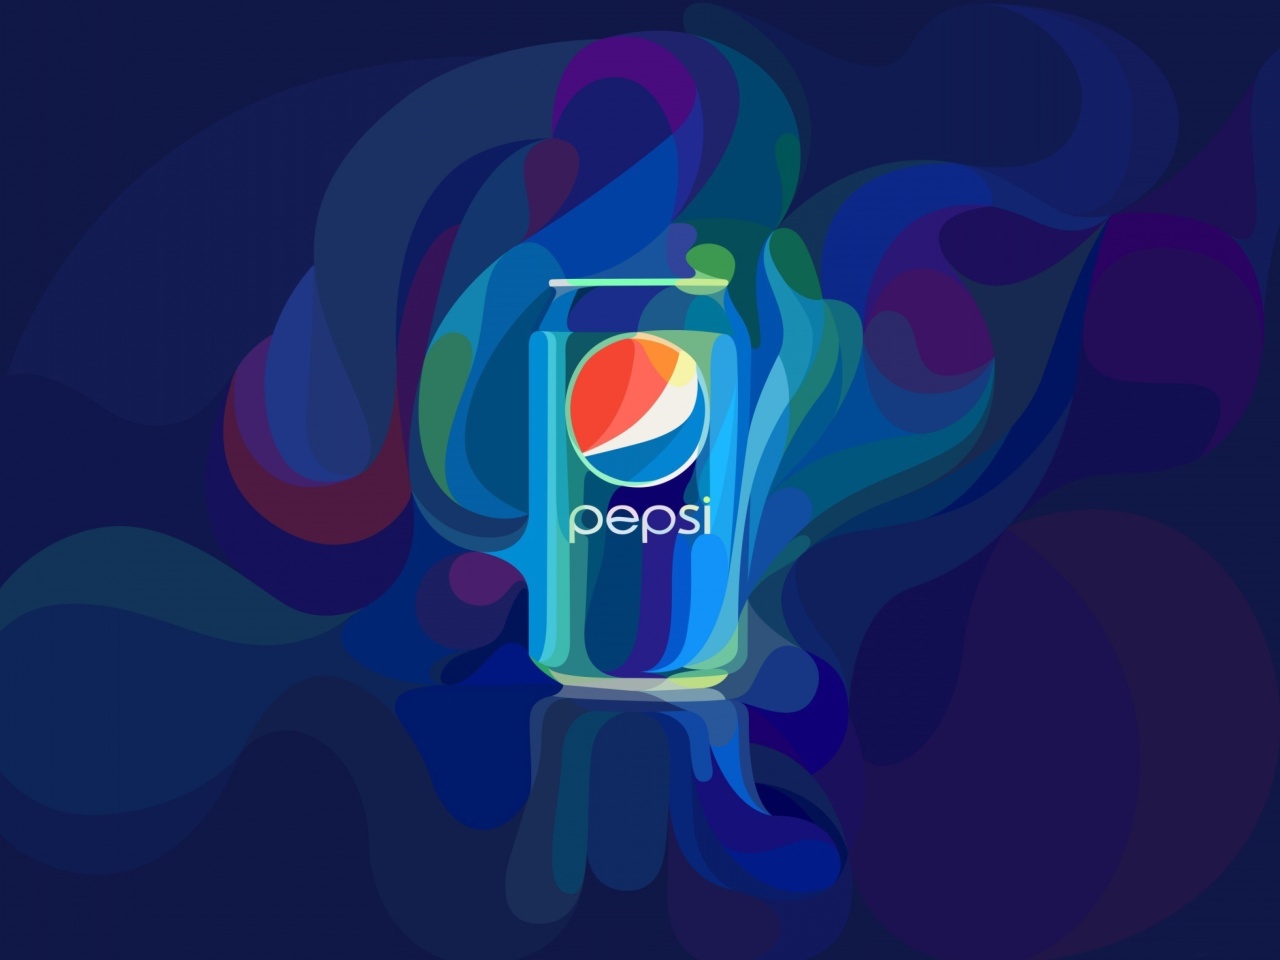 Обои Pepsi Design 1280x960